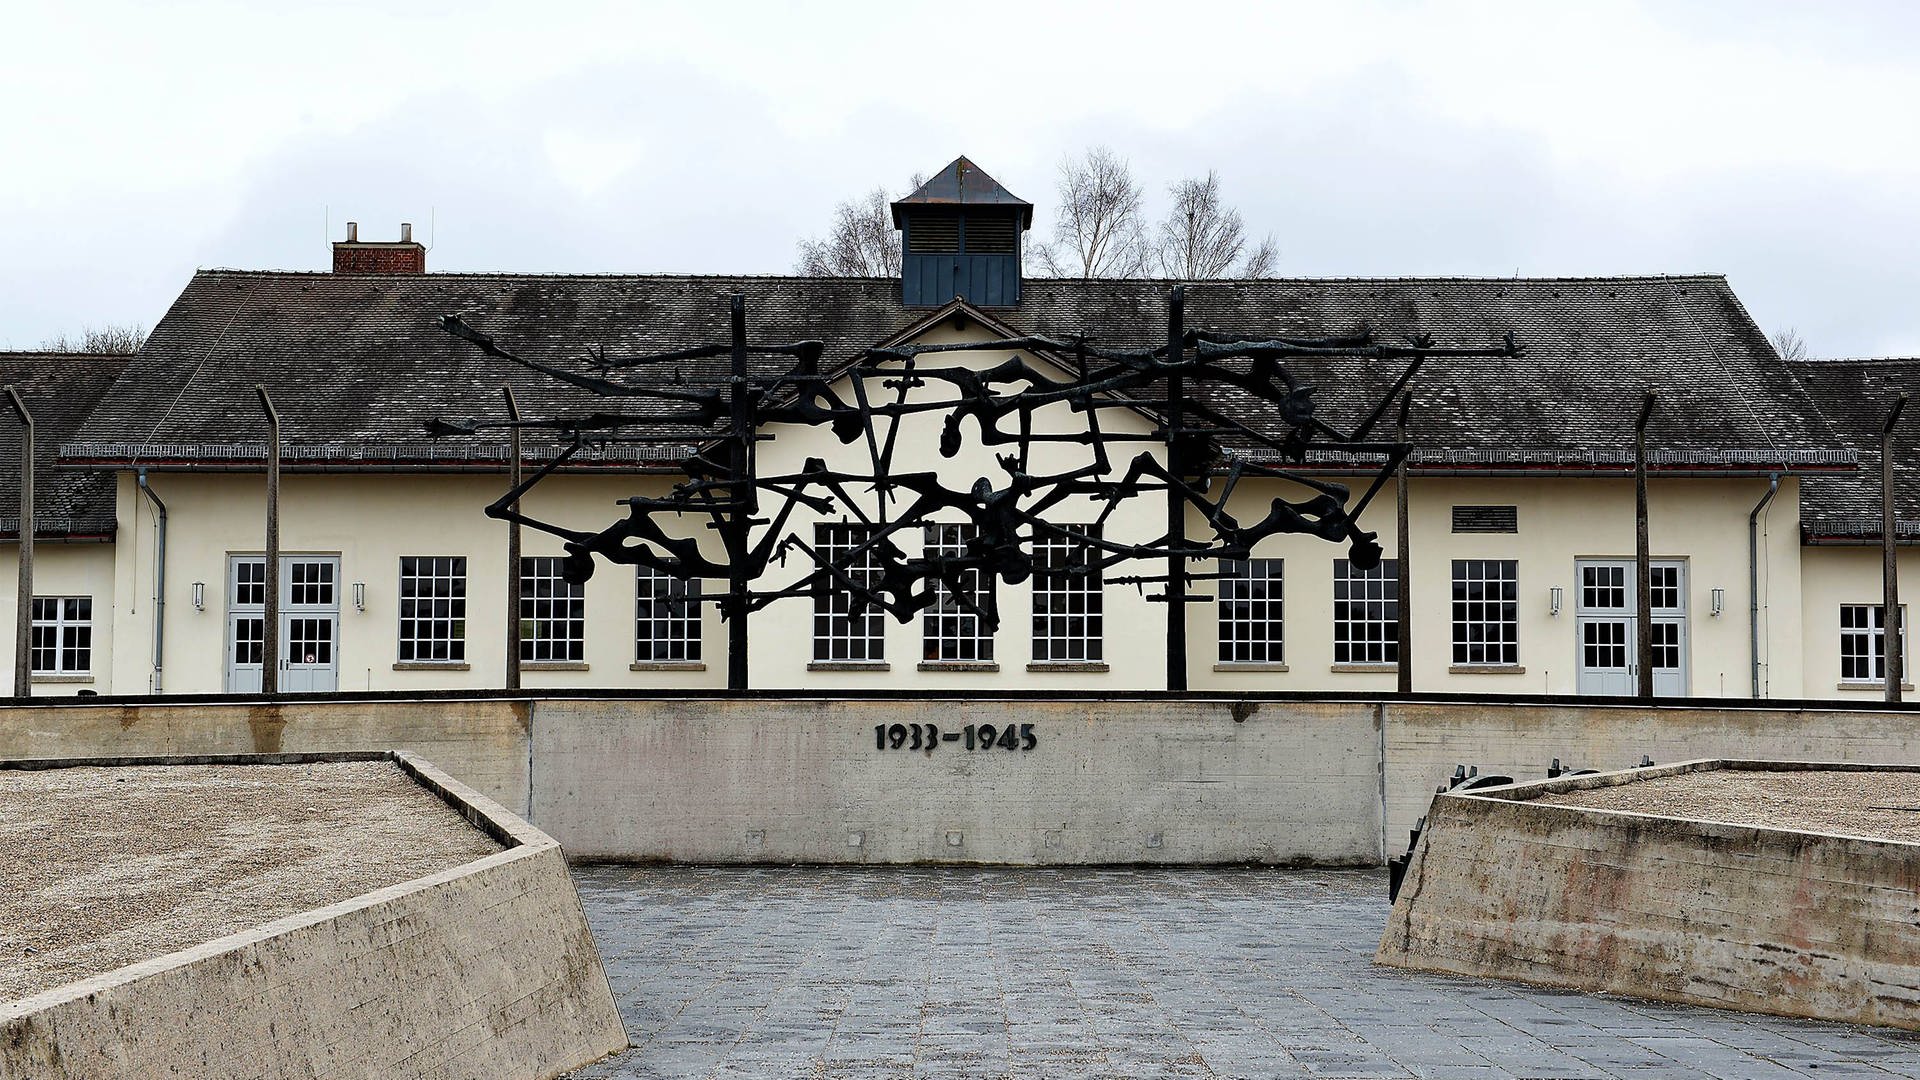 Eingang und Hauptgebäude des Konzentrationslagers Dachau